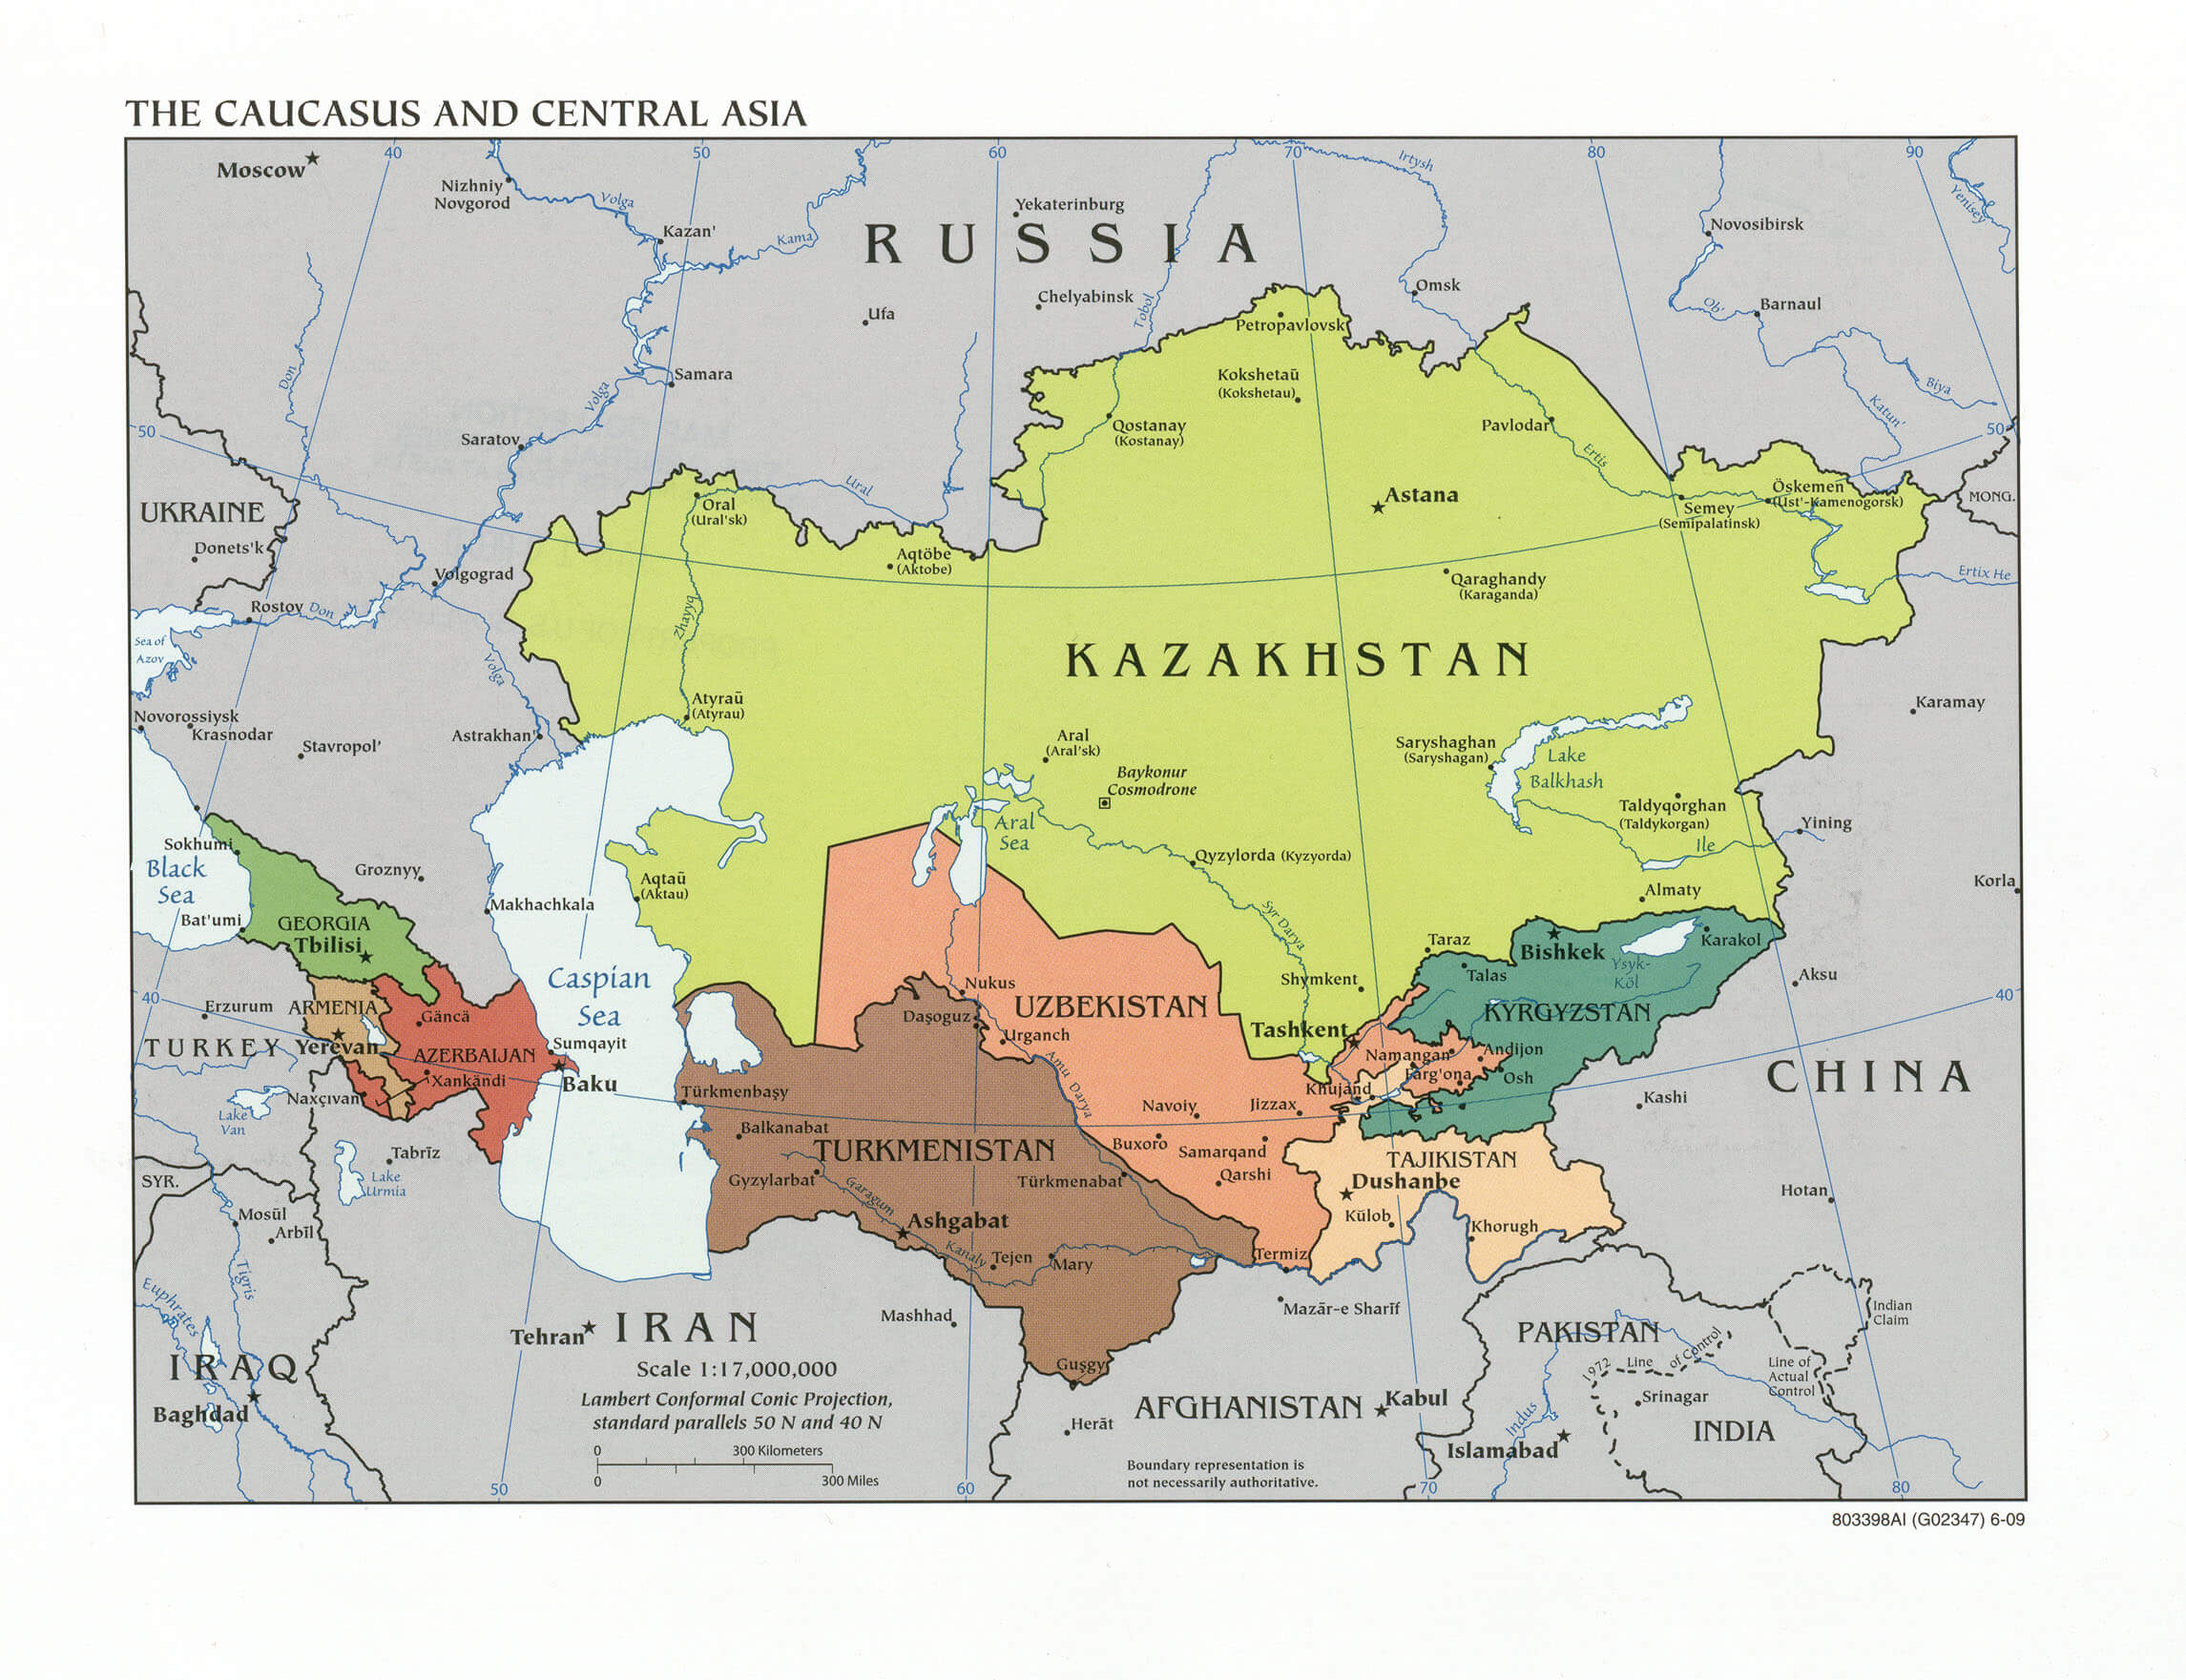 Caucase central asie carte